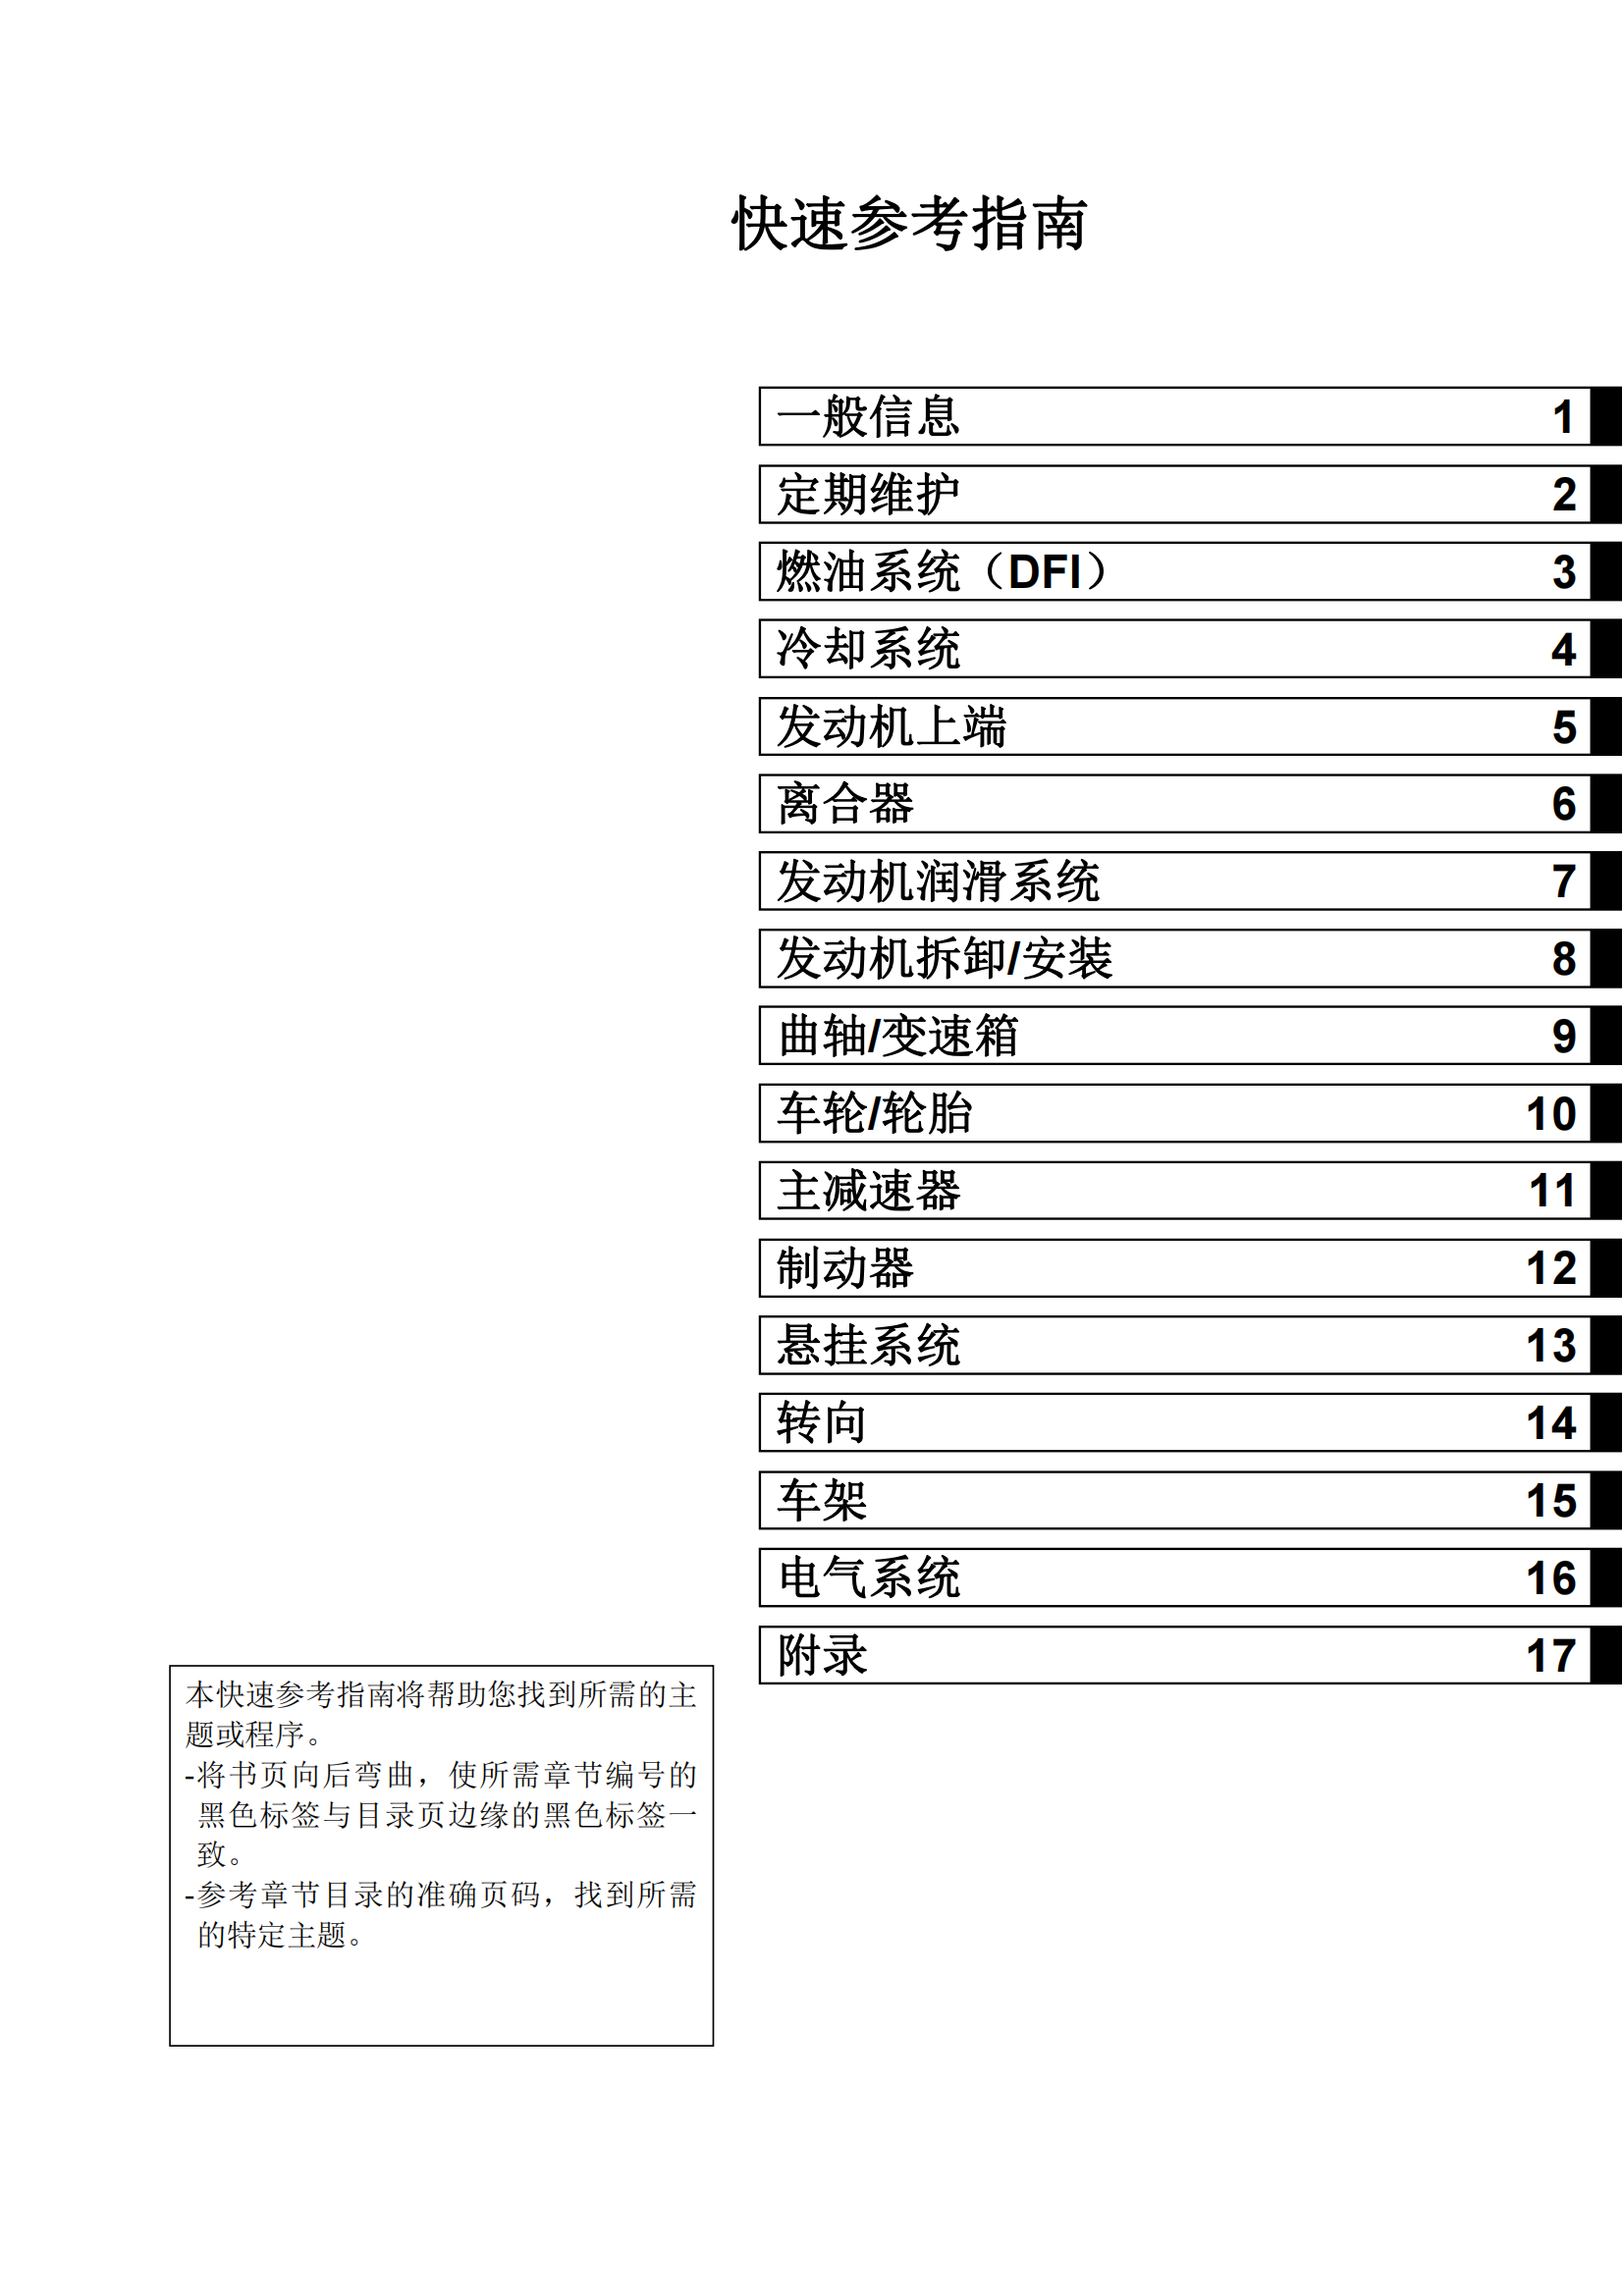 简体中文2008-2011年川崎kx450f维修手册kawasaki kx450f维修手册插图1